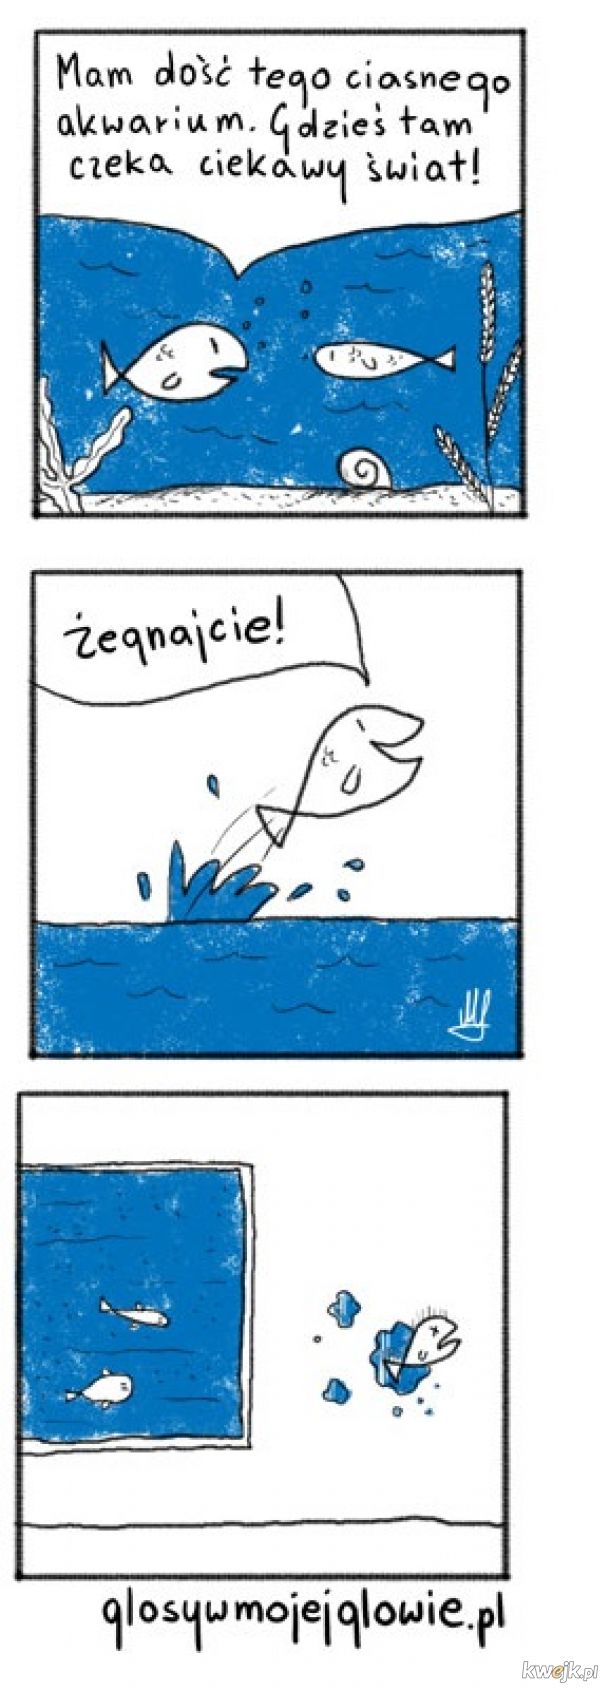 Trafne spostrzeżenie Godzilli, czyli abstrakcyjne komiksy Maćka Łazowskiego, obrazek 11